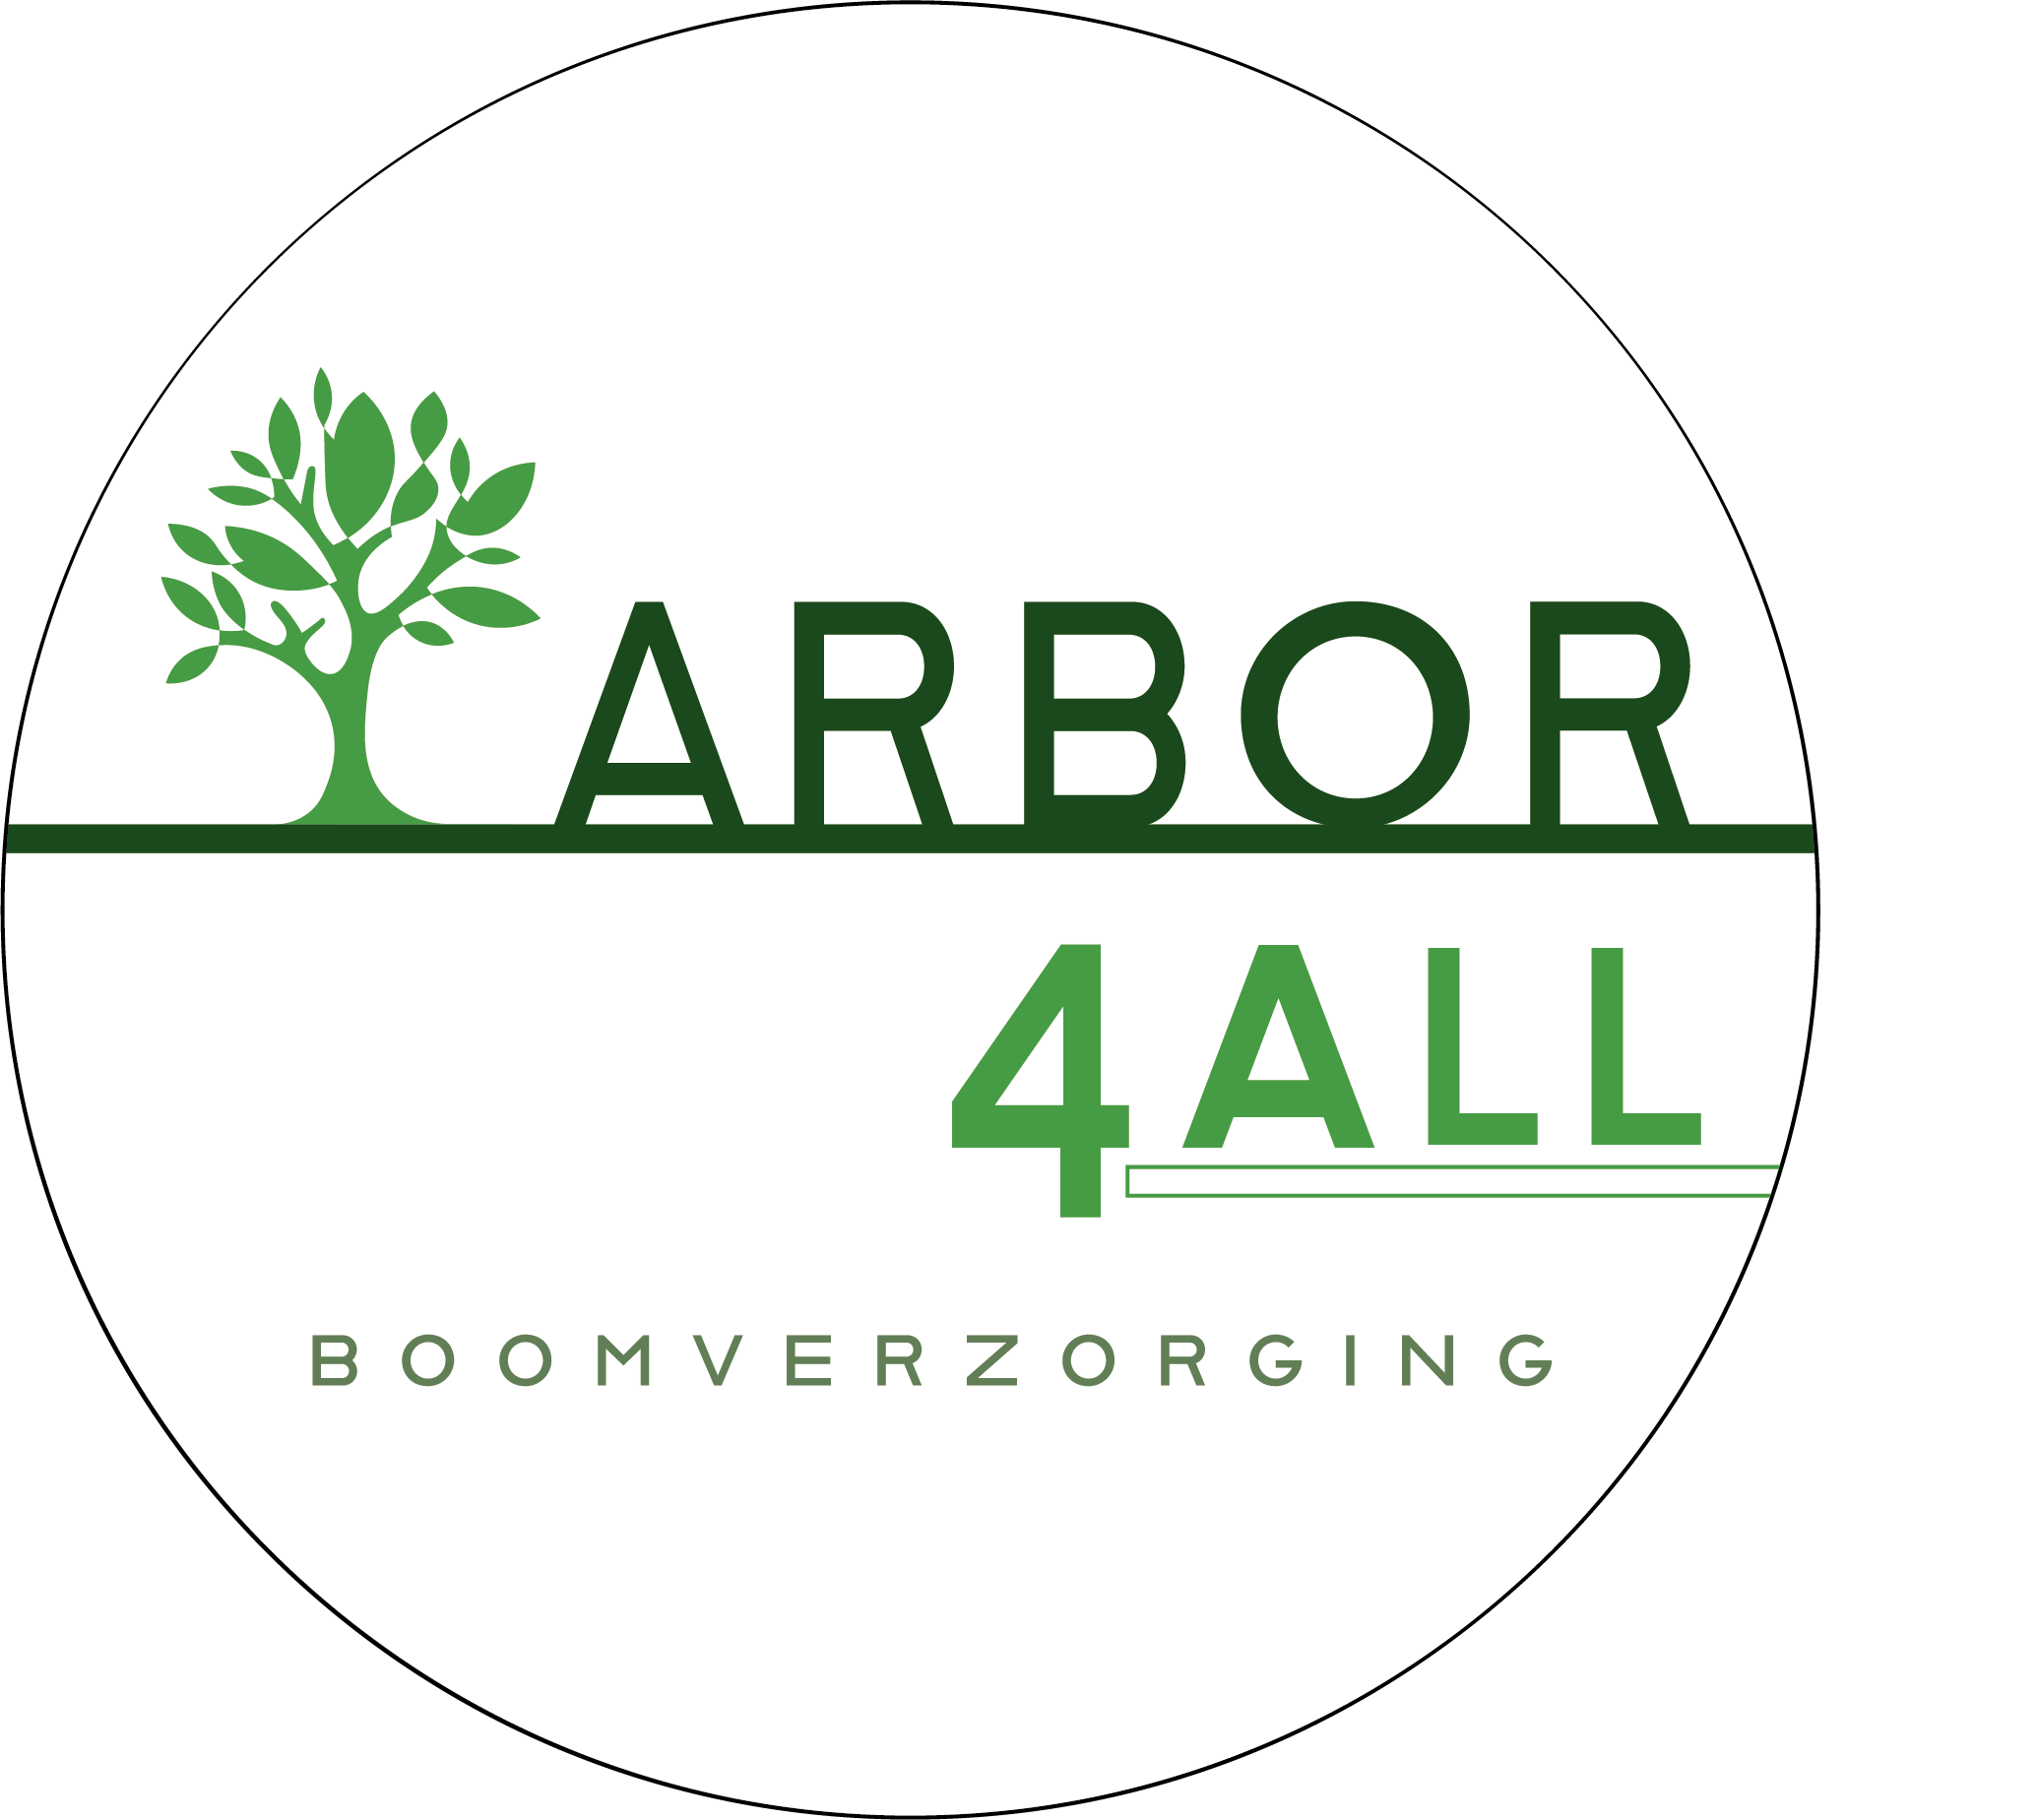 Arbor-4all Boomverzorging